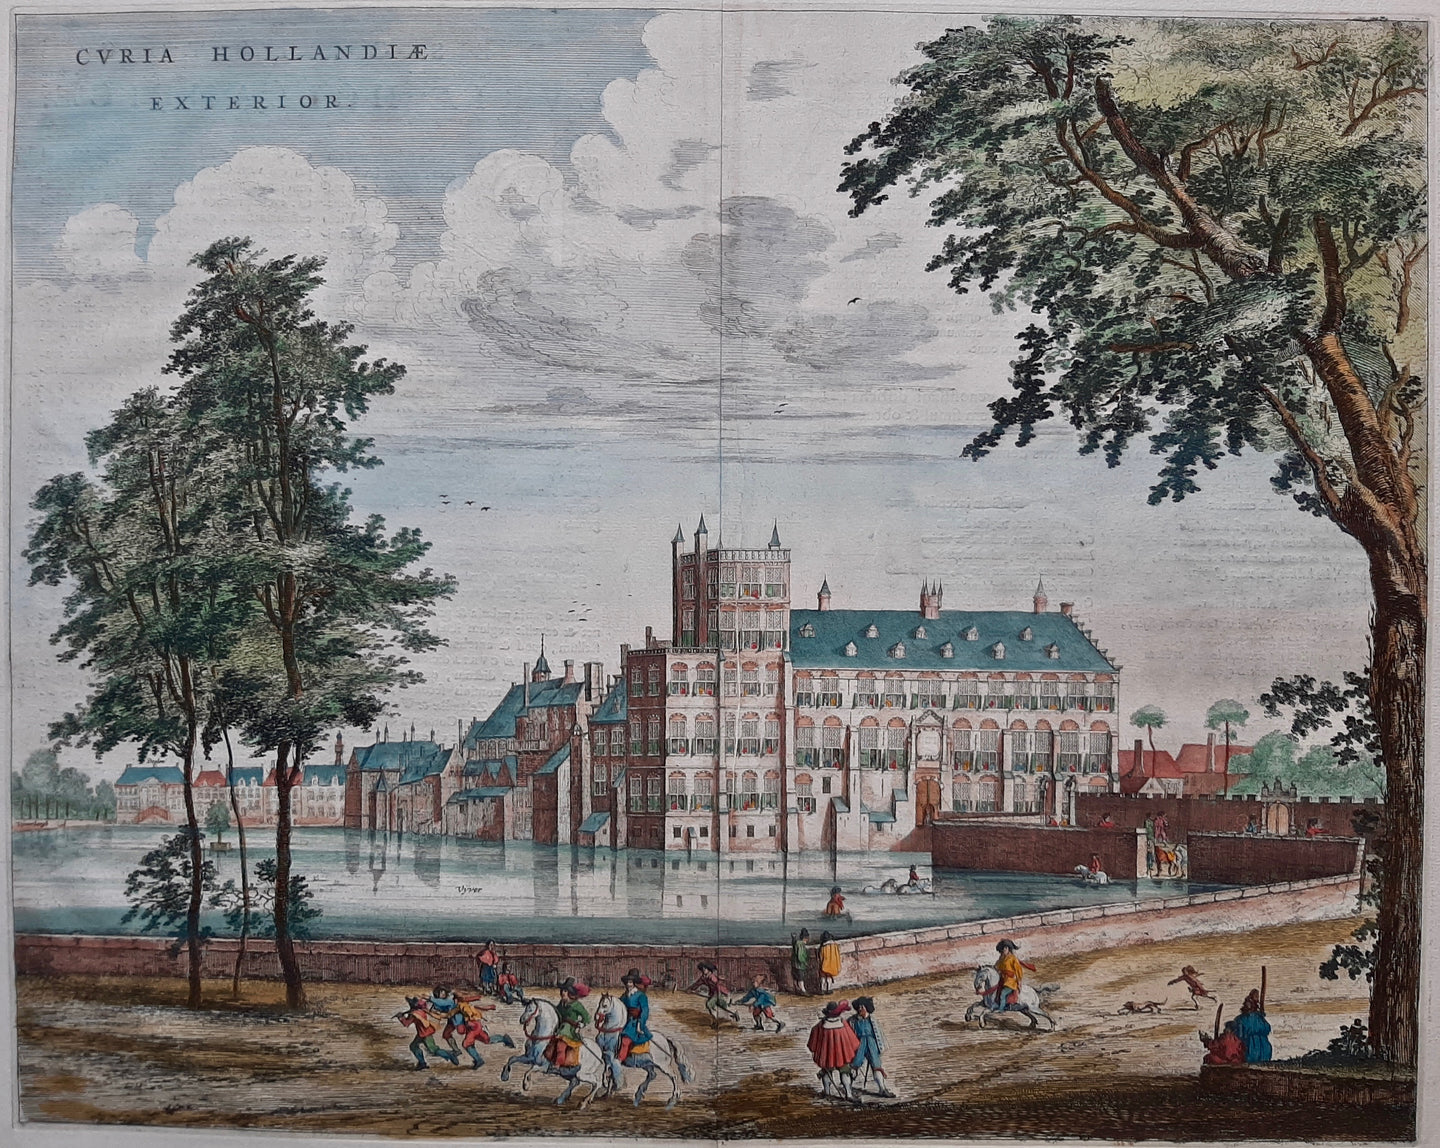 Den Haag Curia Hollandiae Exterior Buitenhof 's-Gravenhage - J Blaeu - 1649